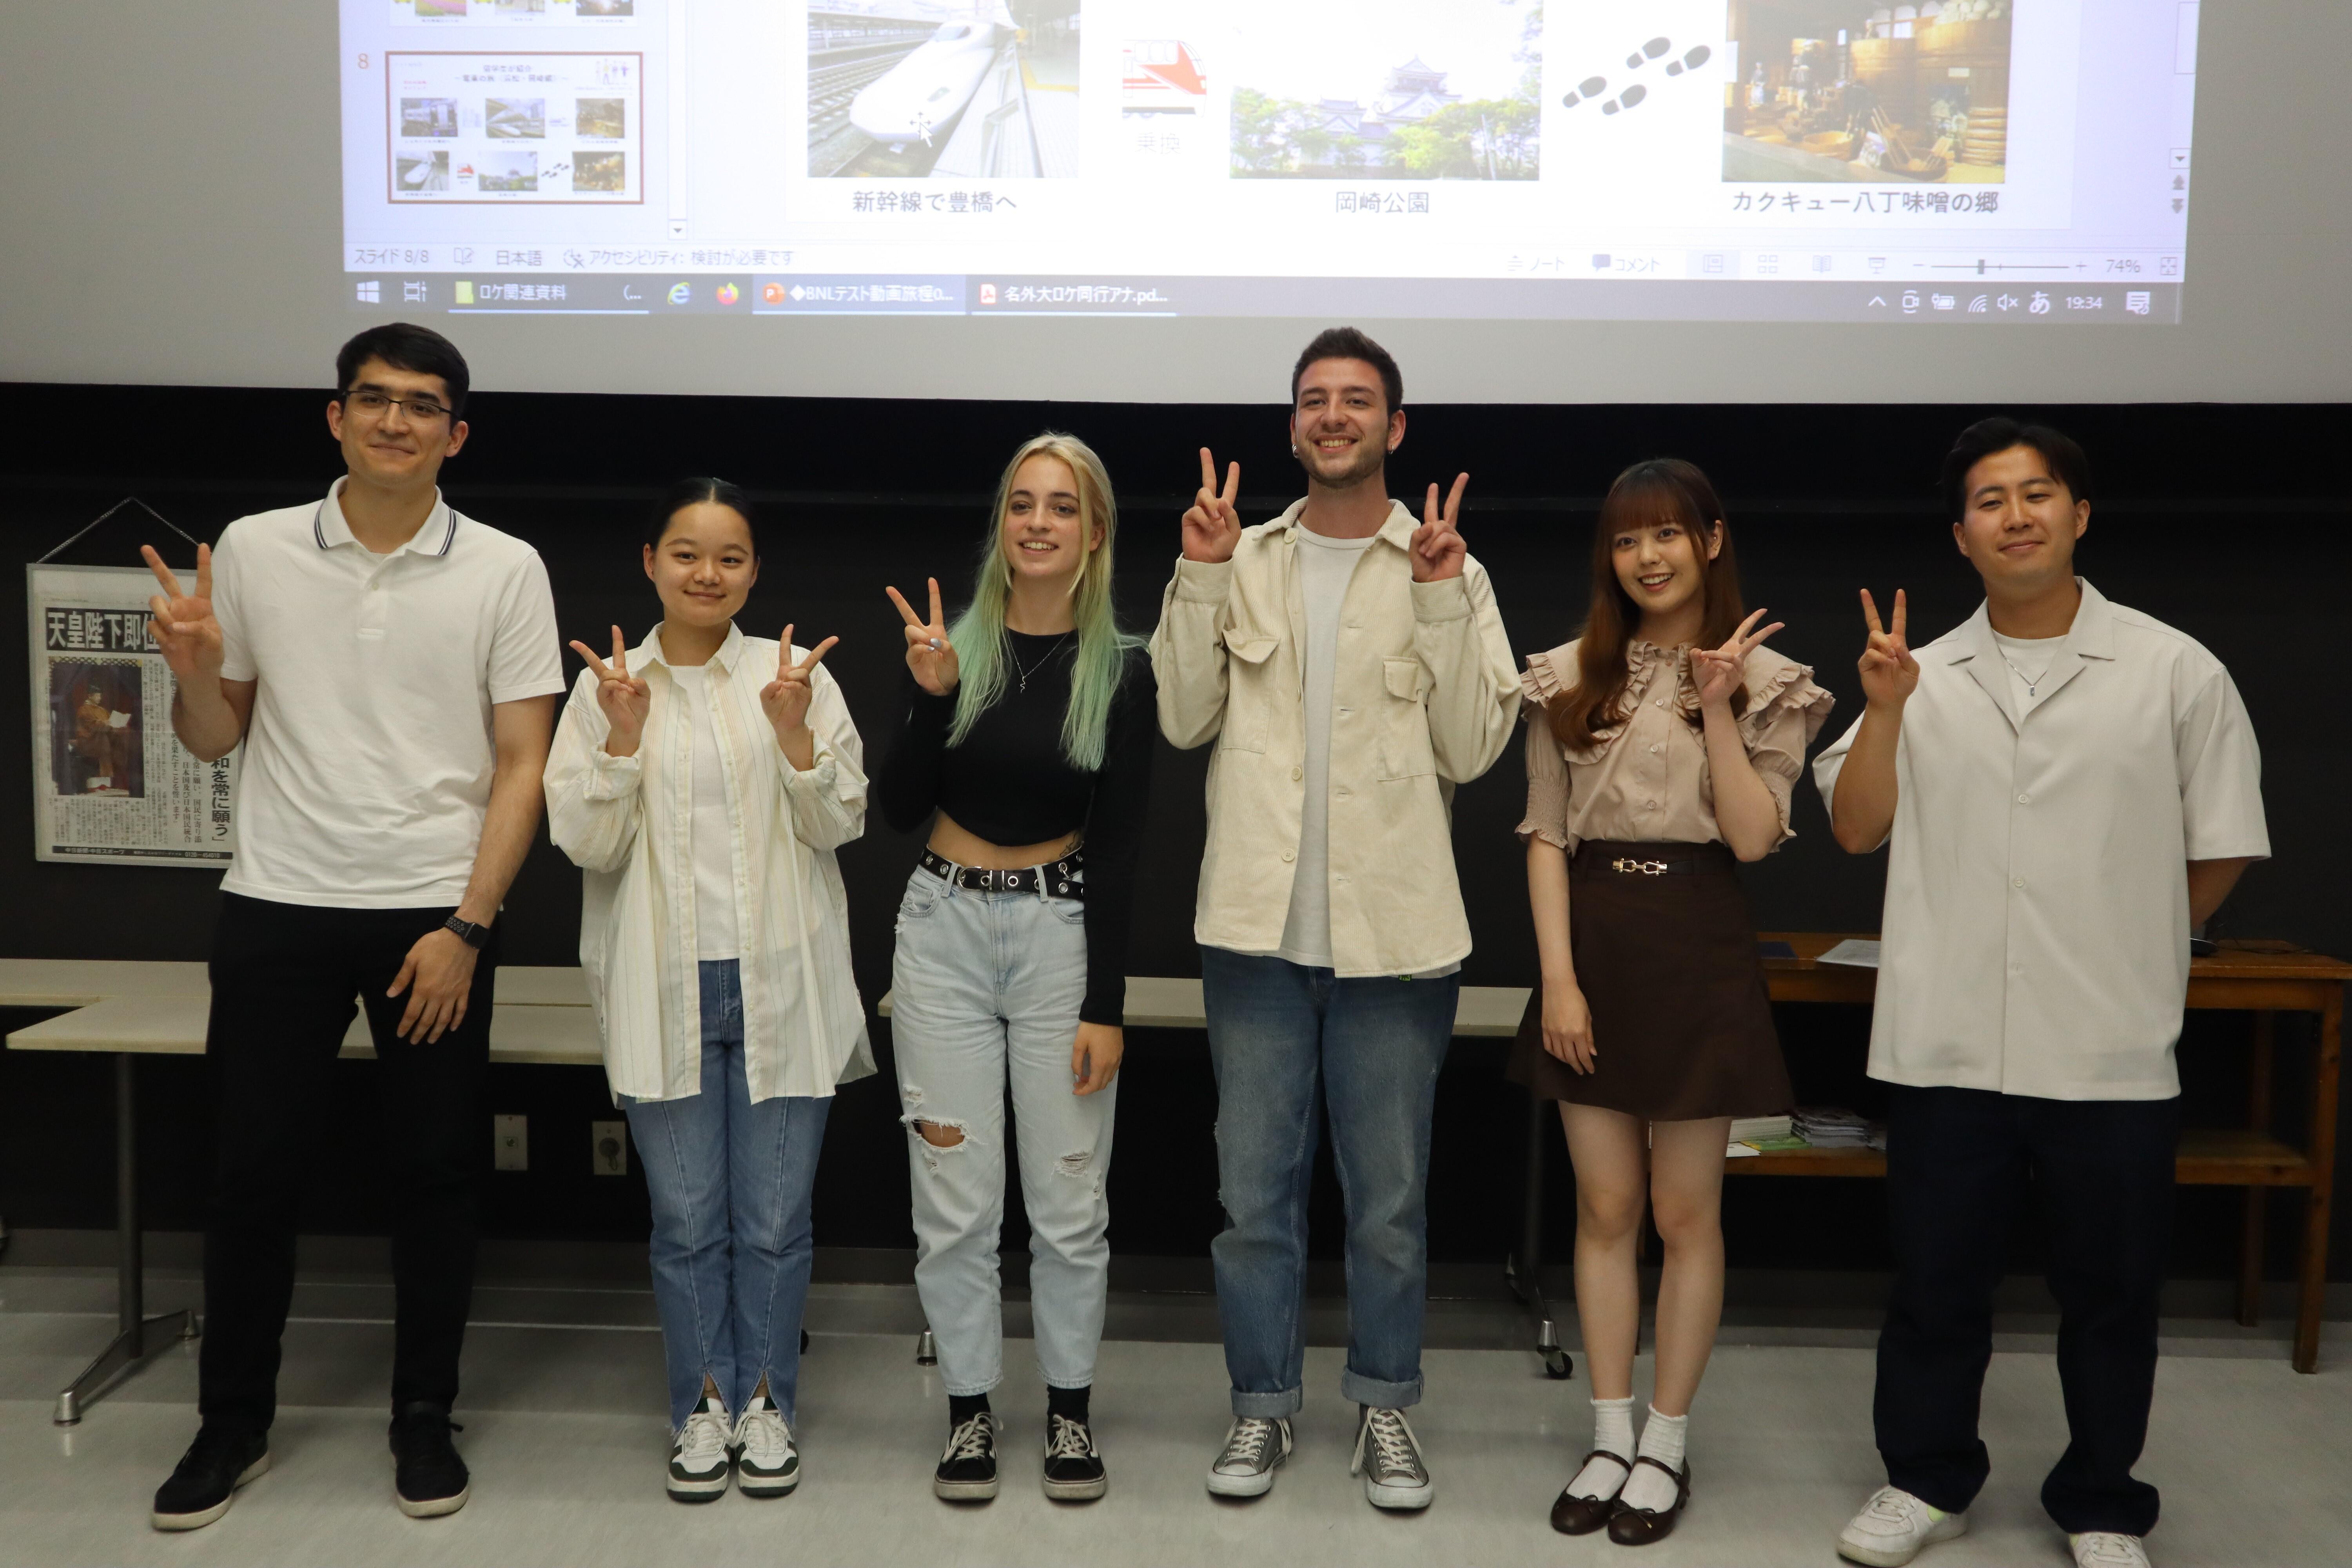 名古屋外国語大学のチームと一緒に記念撮影